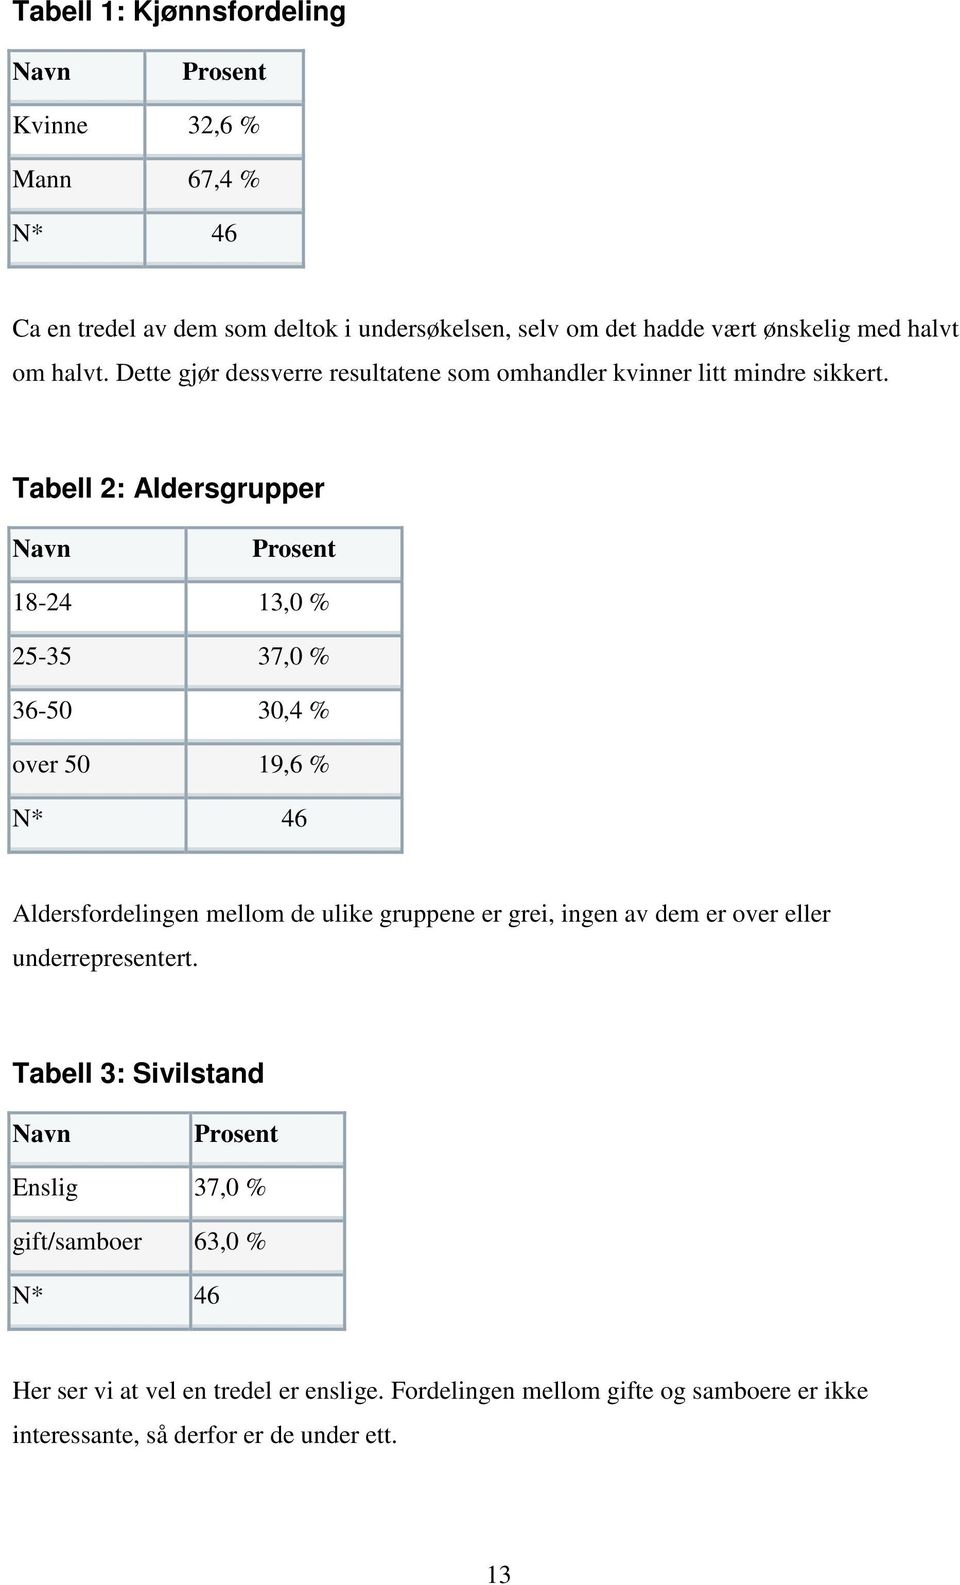 Tabell 2: Aldersgrupper Navn Prosent 18-24 13,0 % 25-35 37,0 % 36-50 30,4 % over 50 19,6 % N* 46 Aldersfordelingen mellom de ulike gruppene er grei, ingen av